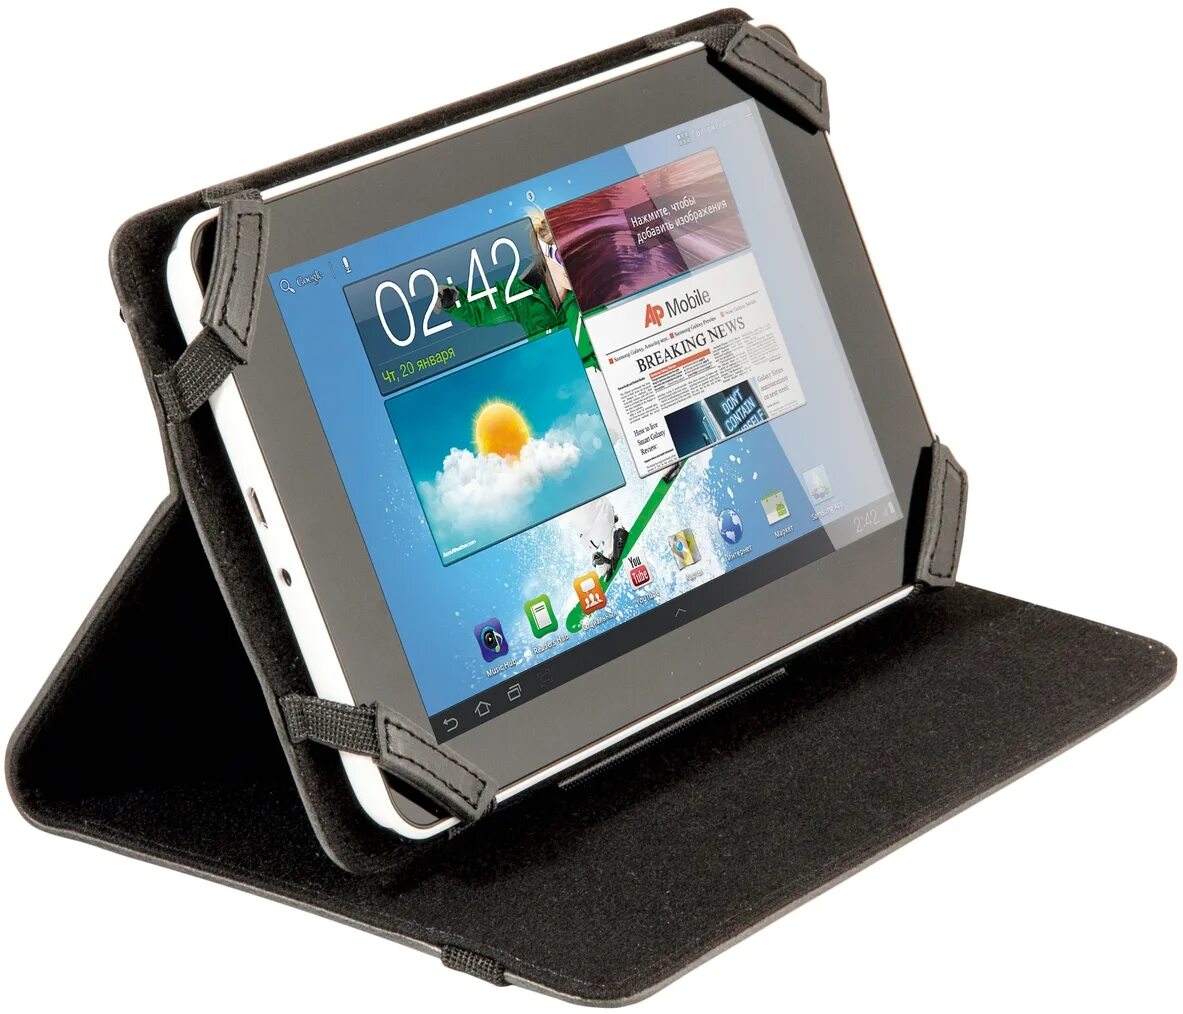 Универсальные чехлы для планшетов купить. Чехол Defender Tablet Purse Uni 10.1 универсальный для планшетов 10.1 дюйм. Чехол для планшета 10.1 HTC. Чехол-подставка для планшета 10.1 дюймов. Универсальный чехол для план.